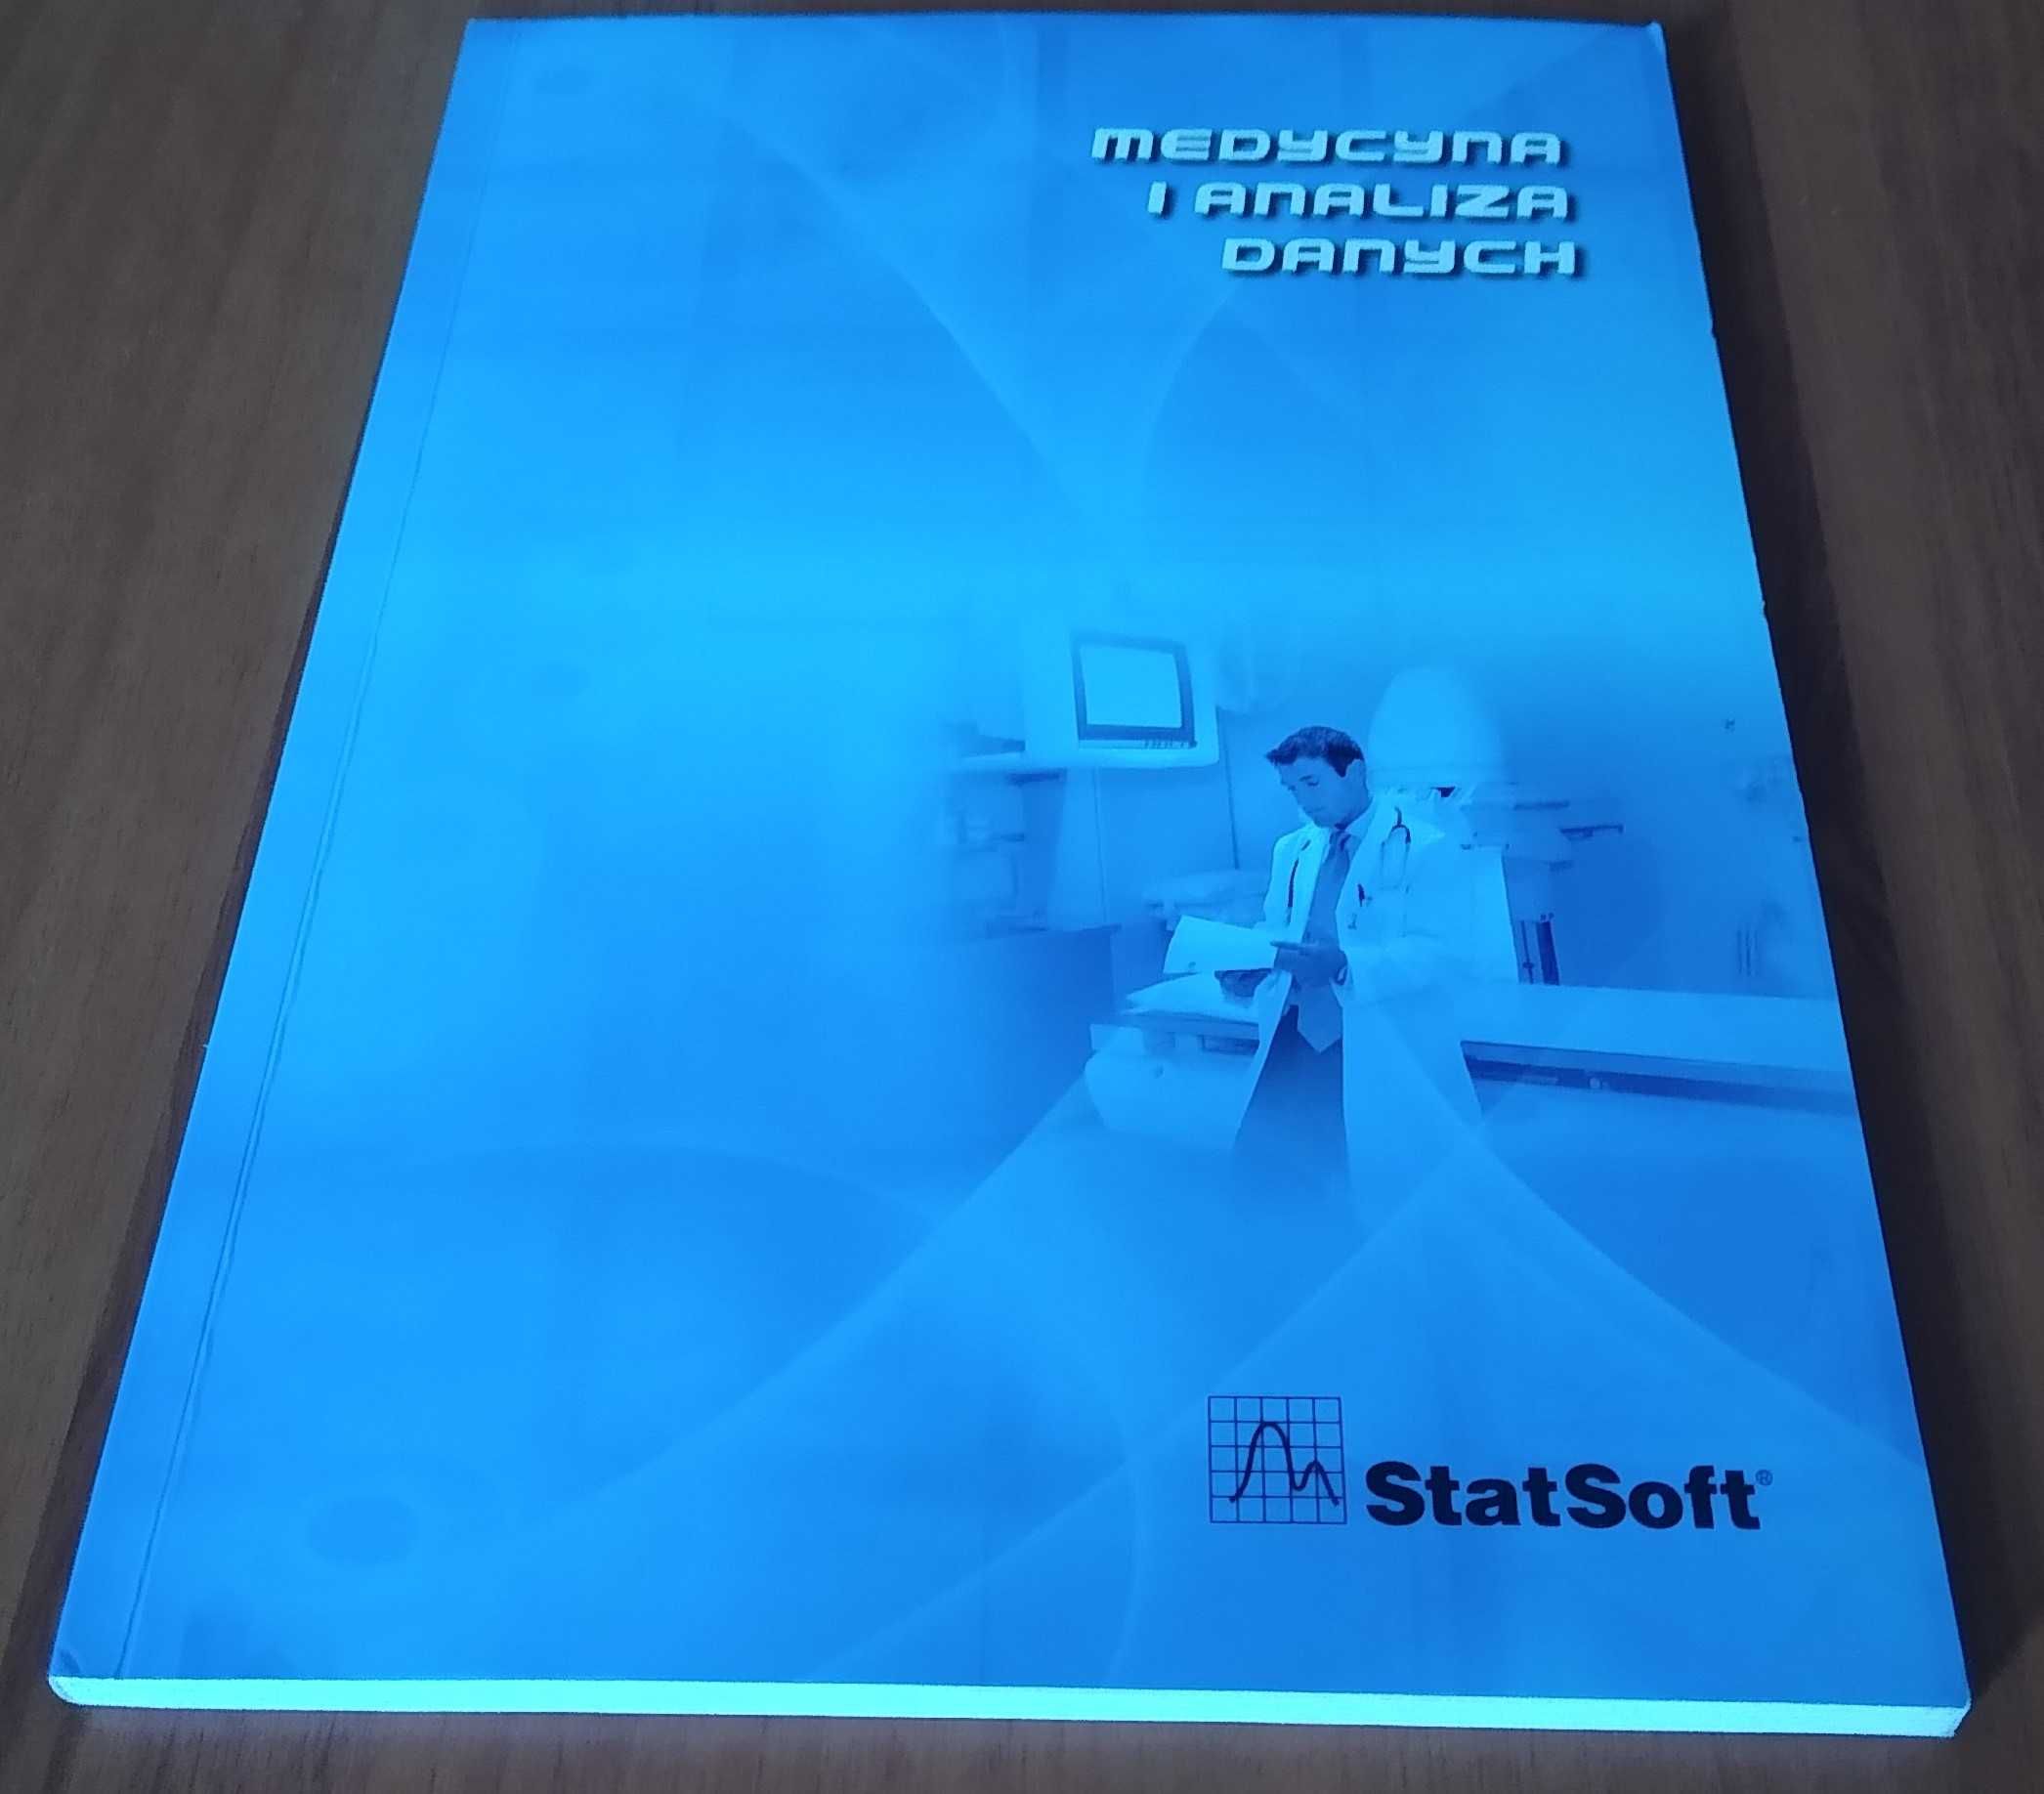 Medycyna i analiza danych / StaSoft. 2010